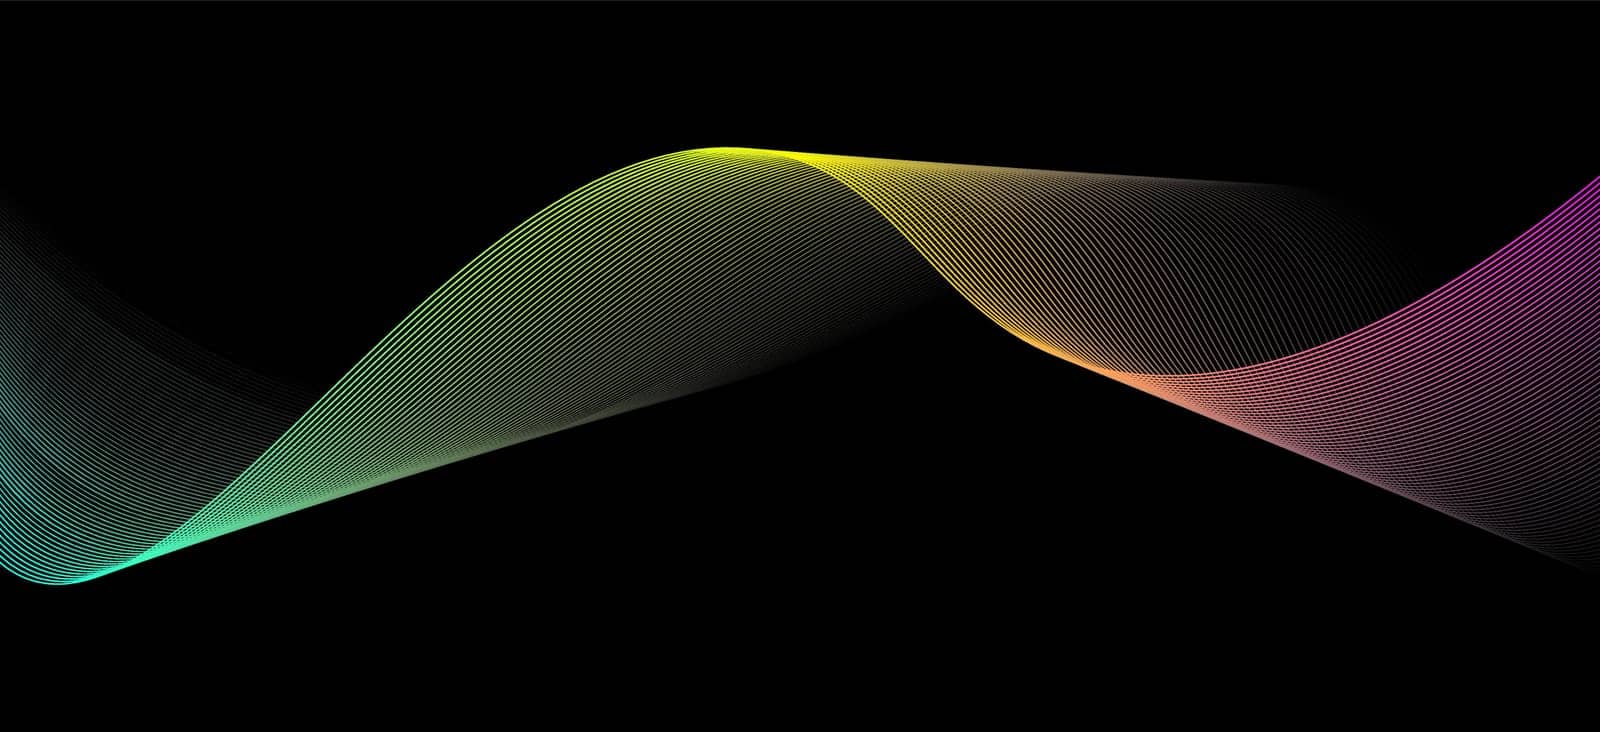 colorful motion sound wave on a dark background by jackreznor